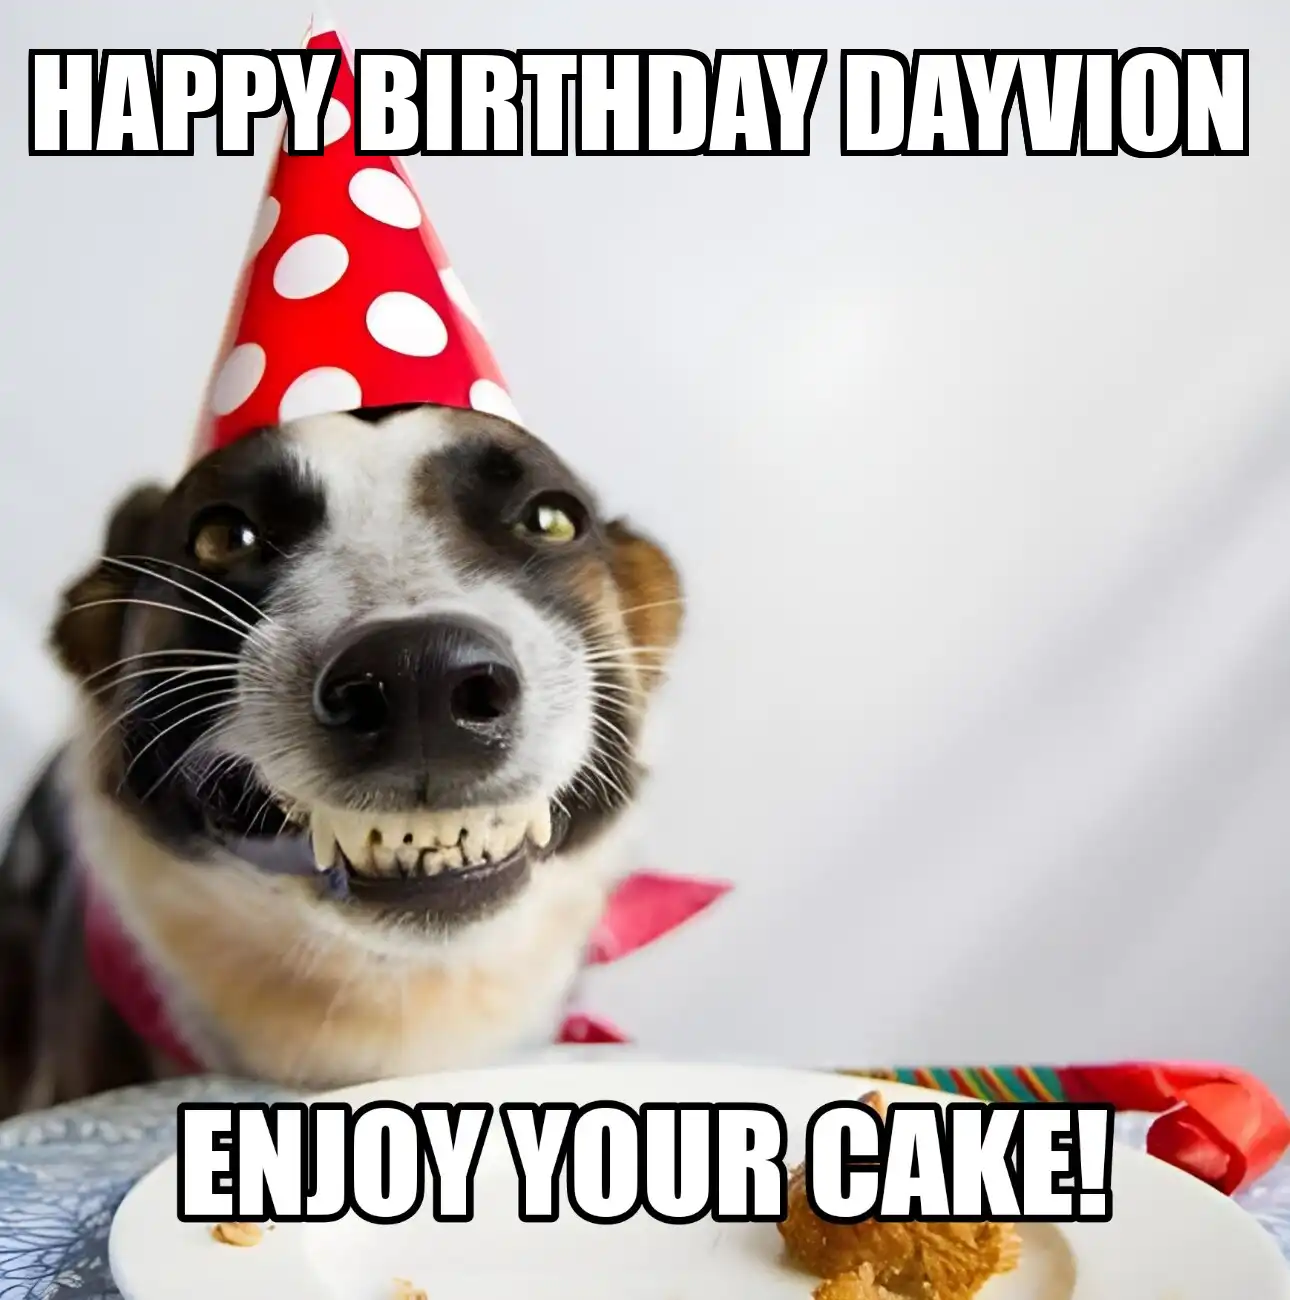 Happy Birthday Dayvion Enjoy Your Cake Dog Meme